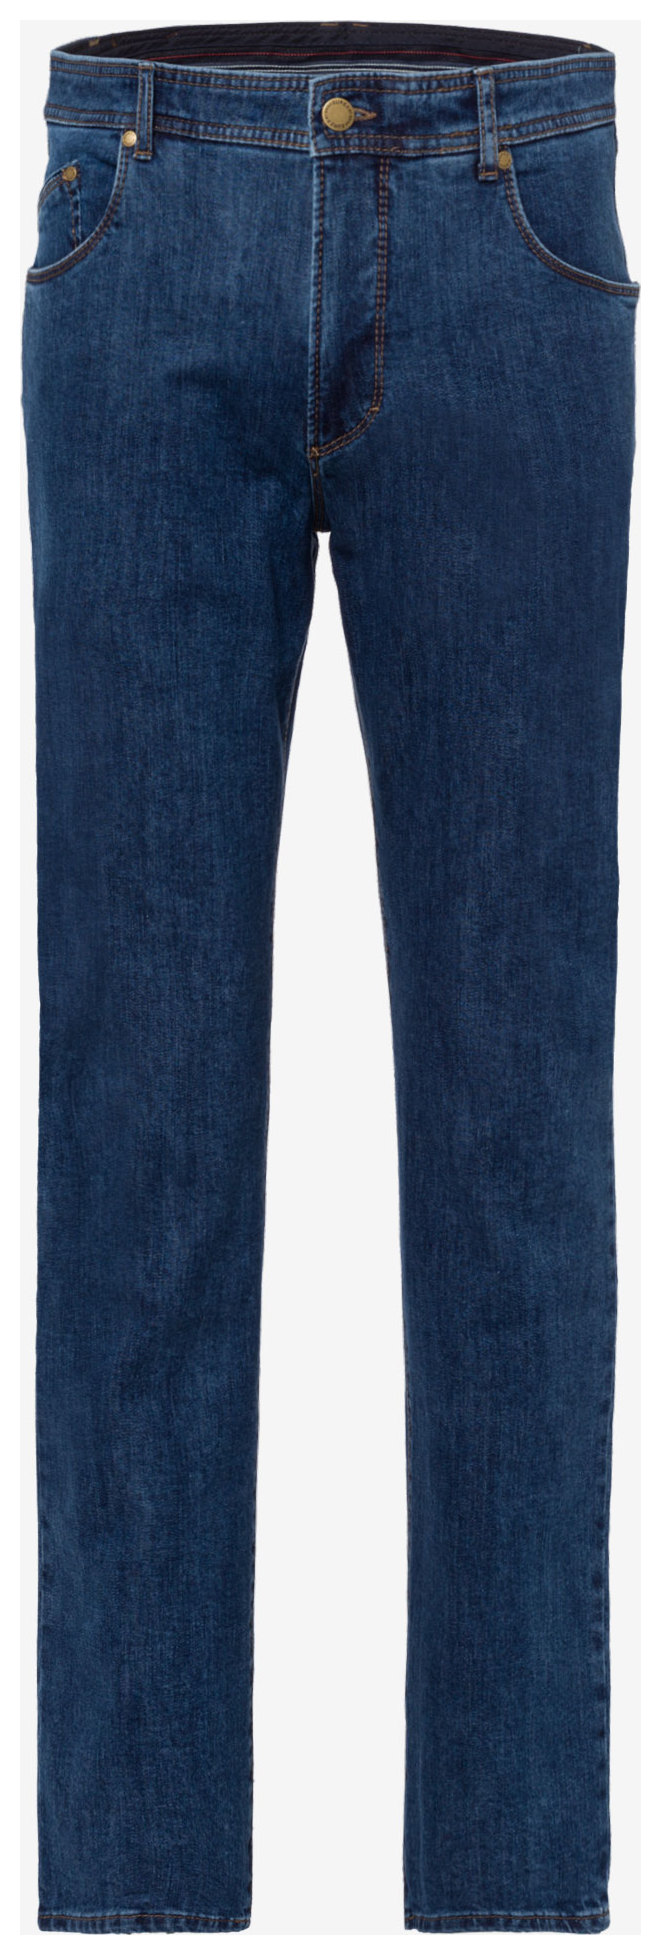 Brax Ken 340 Jeans Blue Stone | Jan Rozing Men's Fashion